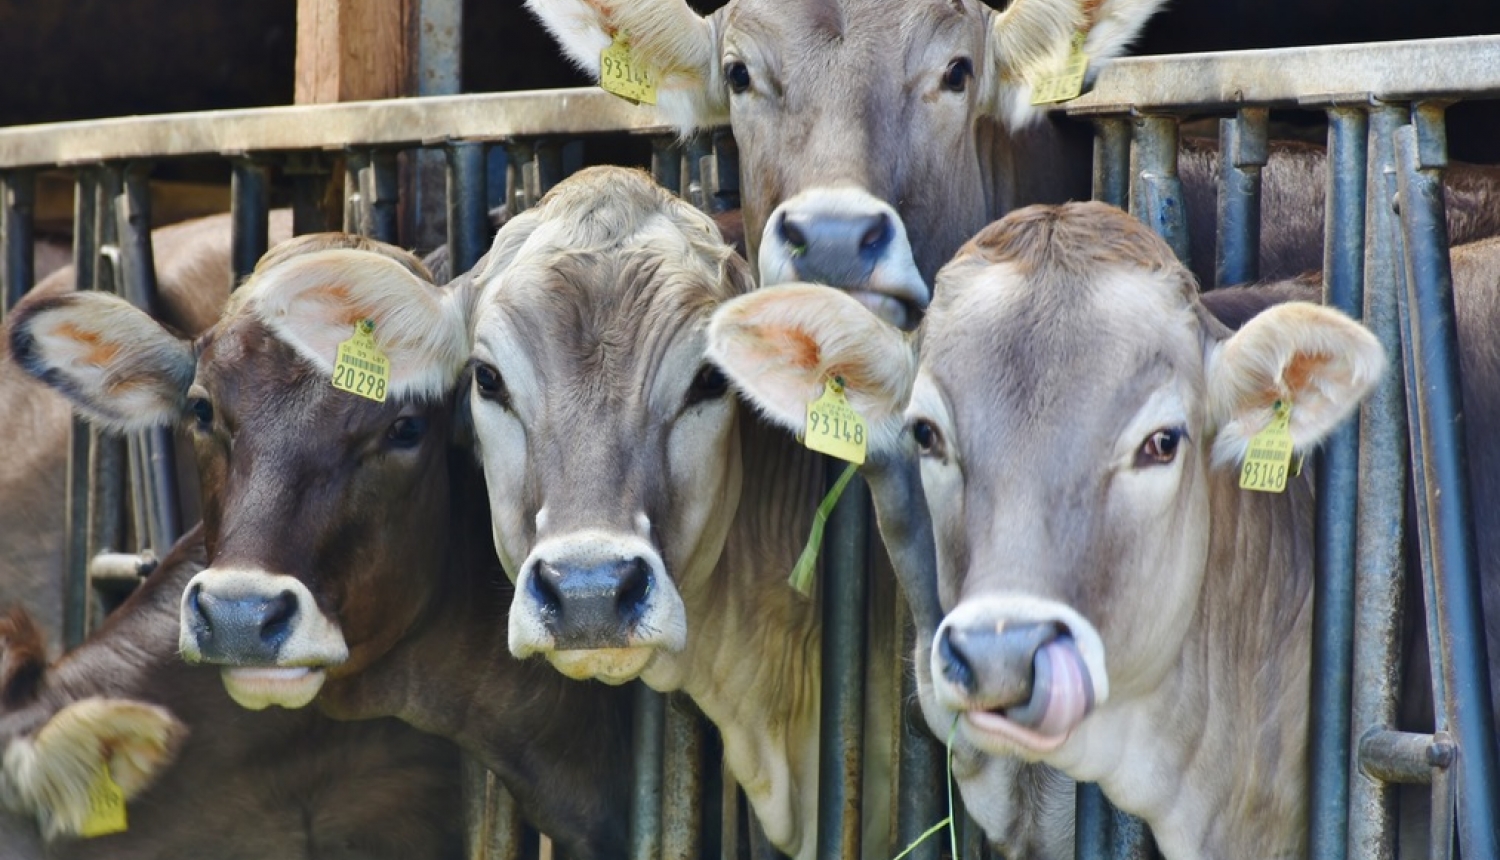 Jauni noteikumi arī slaucamo govju un slaucamo kazu pārraudzībai un snieguma pārbaudei